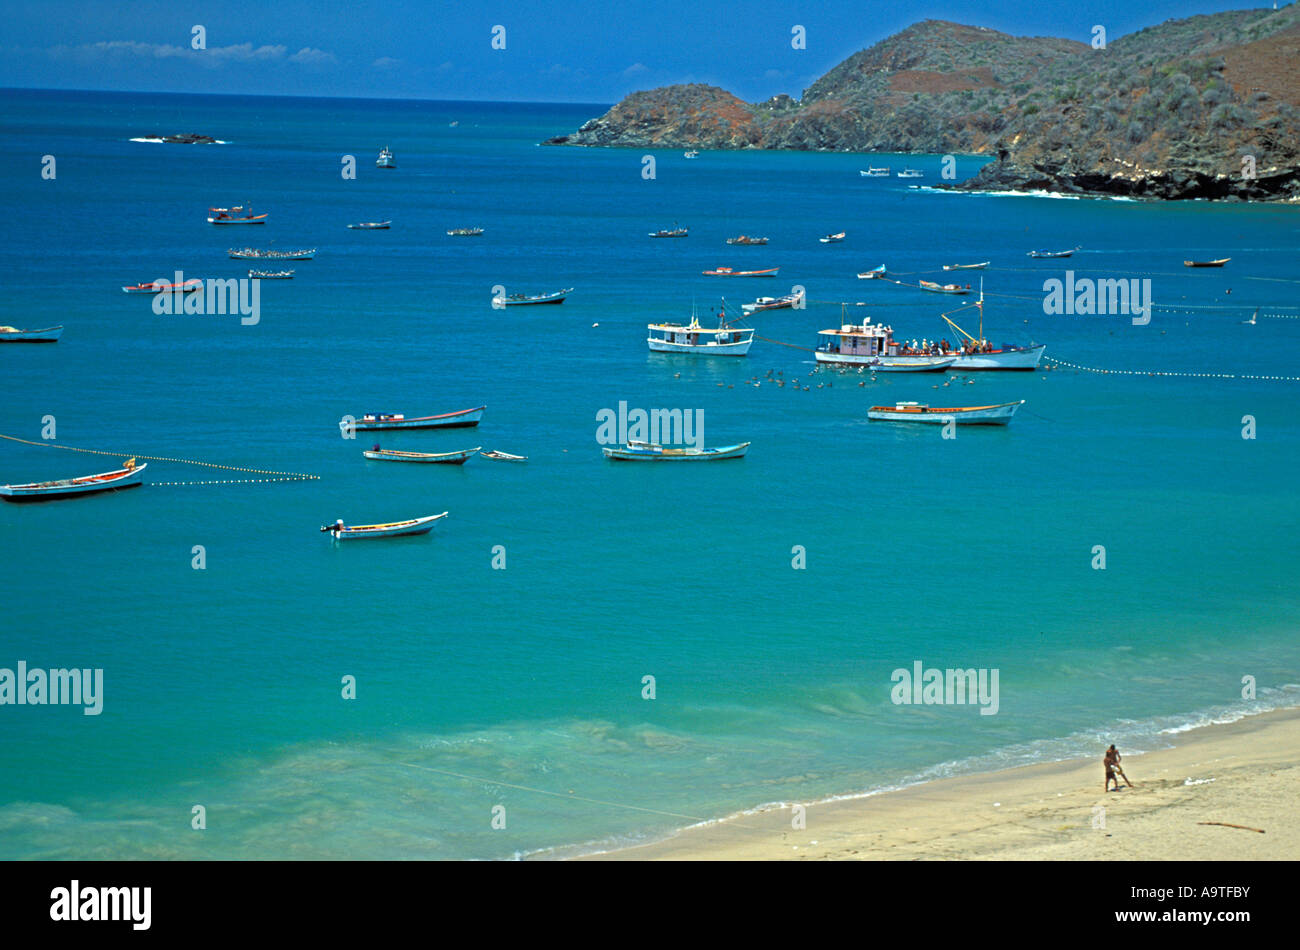 L'île de Isla Margarita Venezuela Playa Manzanillo plage populaire destination de croisière Banque D'Images